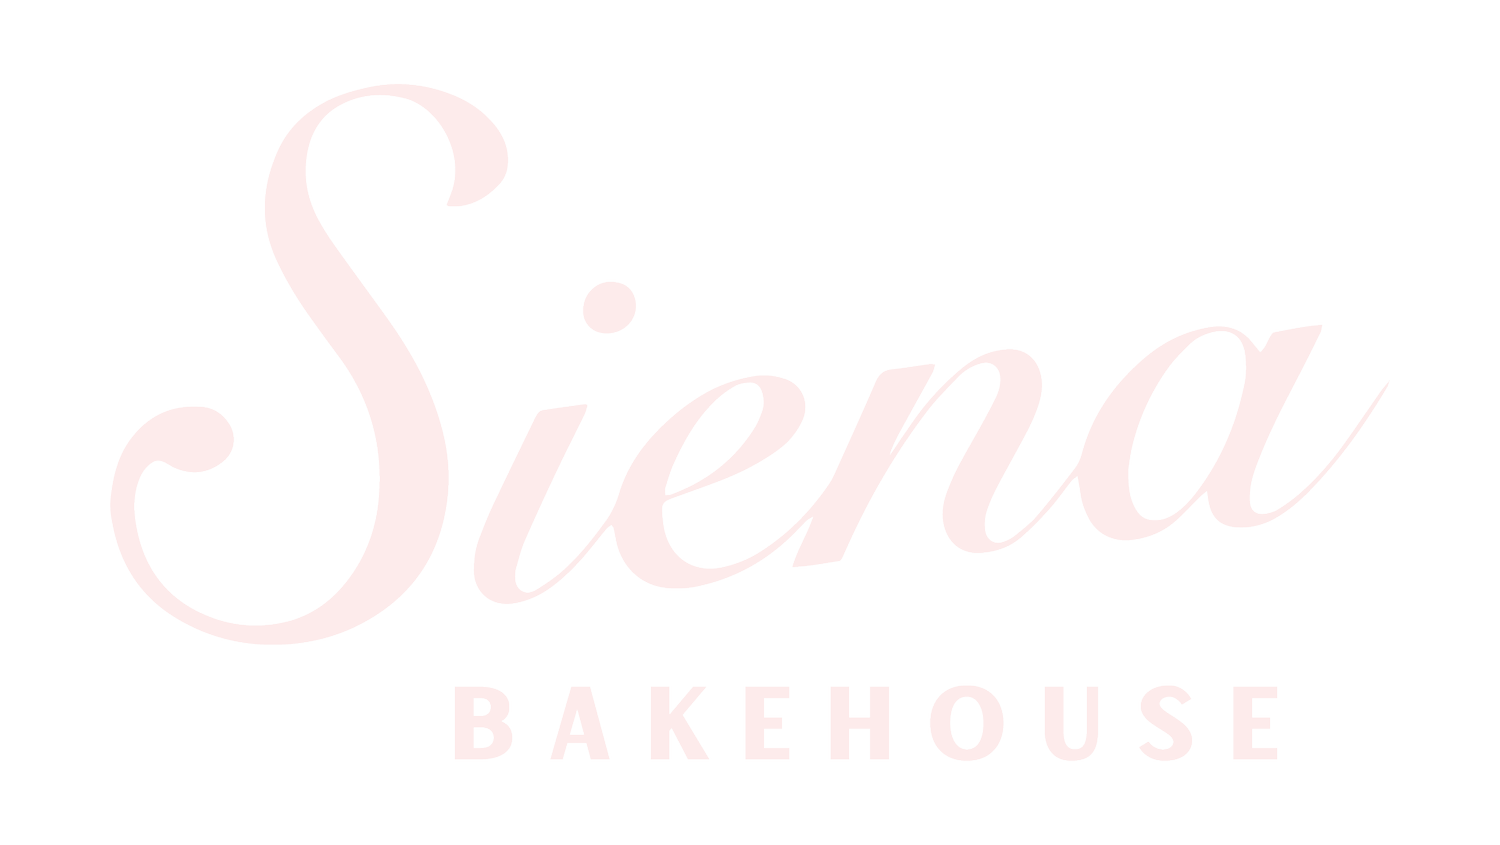 Siena Bakehouse